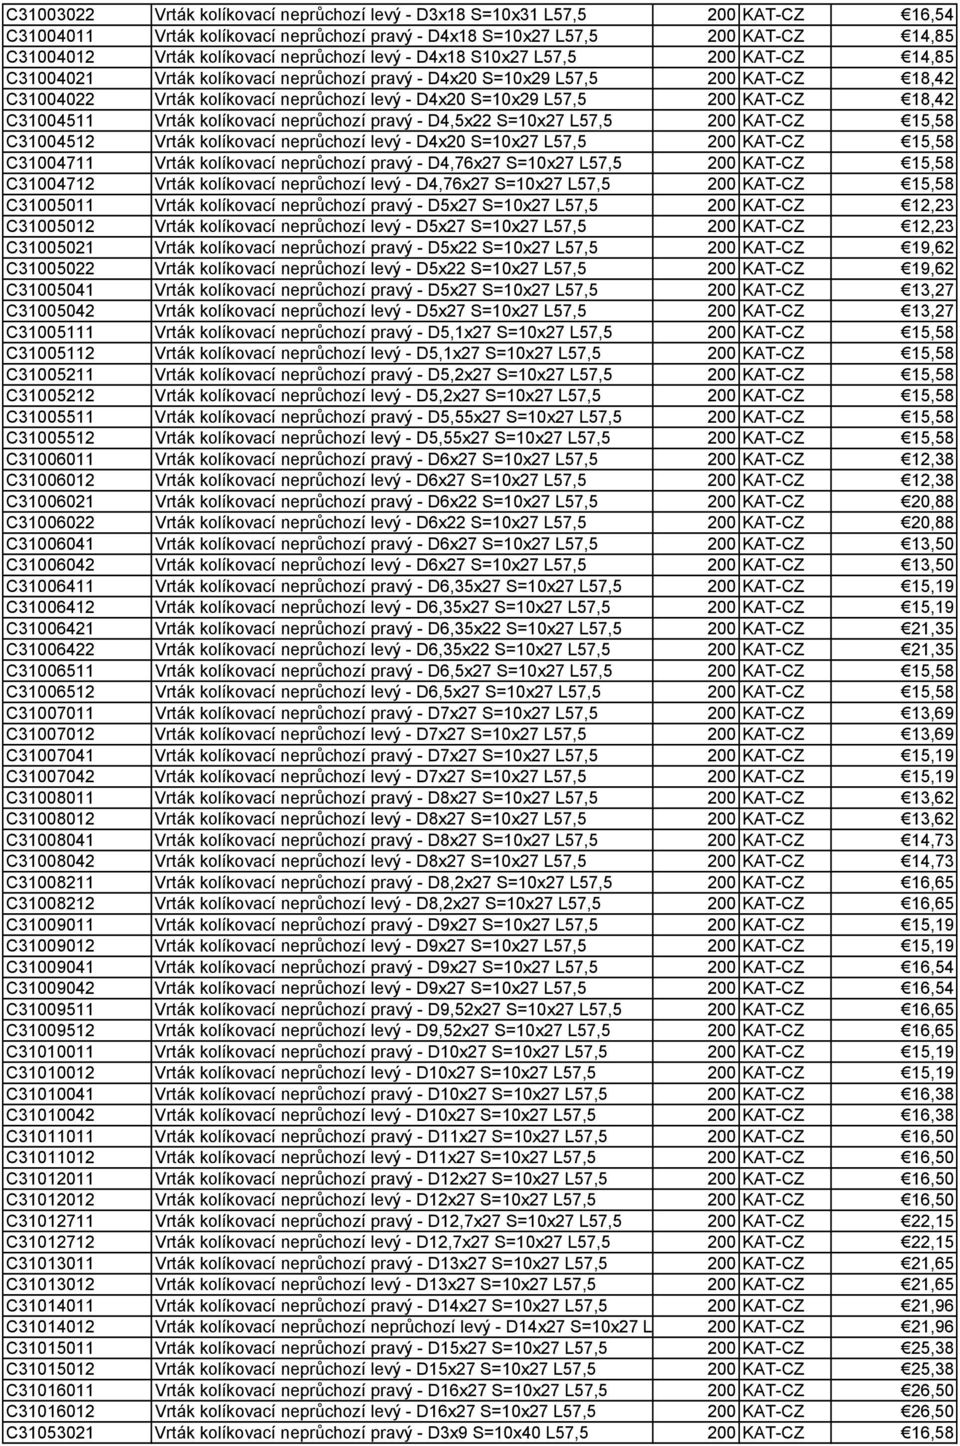 L57,5 200 KAT-CZ 18,42 C31004511 Vrták kolíkovací neprůchozí pravý - D4,5x22 S=10x27 L57,5 200 KAT-CZ 15,58 C31004512 Vrták kolíkovací neprůchozí levý - D4x20 S=10x27 L57,5 200 KAT-CZ 15,58 C31004711